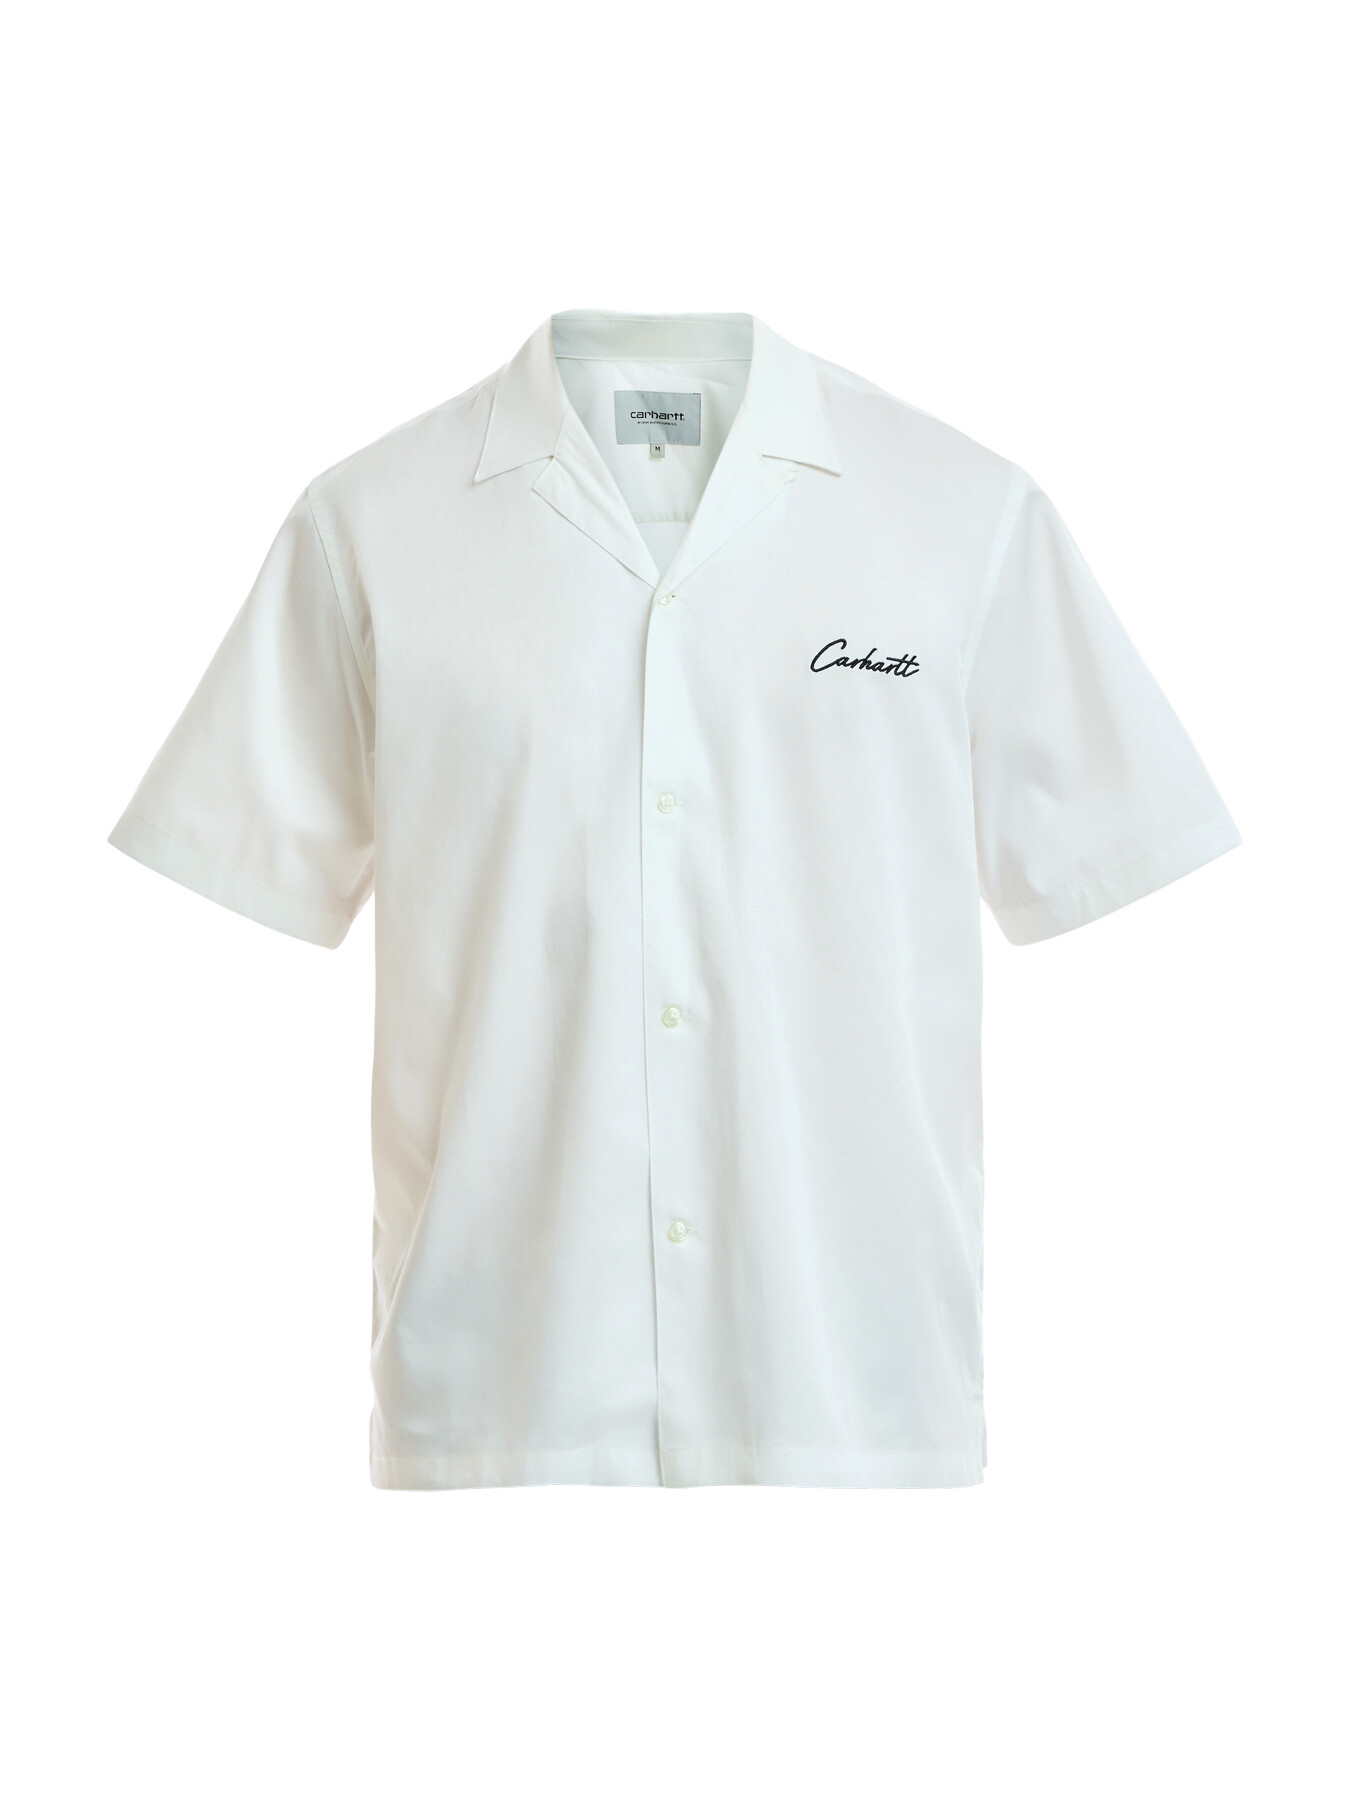 Carhartt Men's Short Sleeve Delray Shirt White